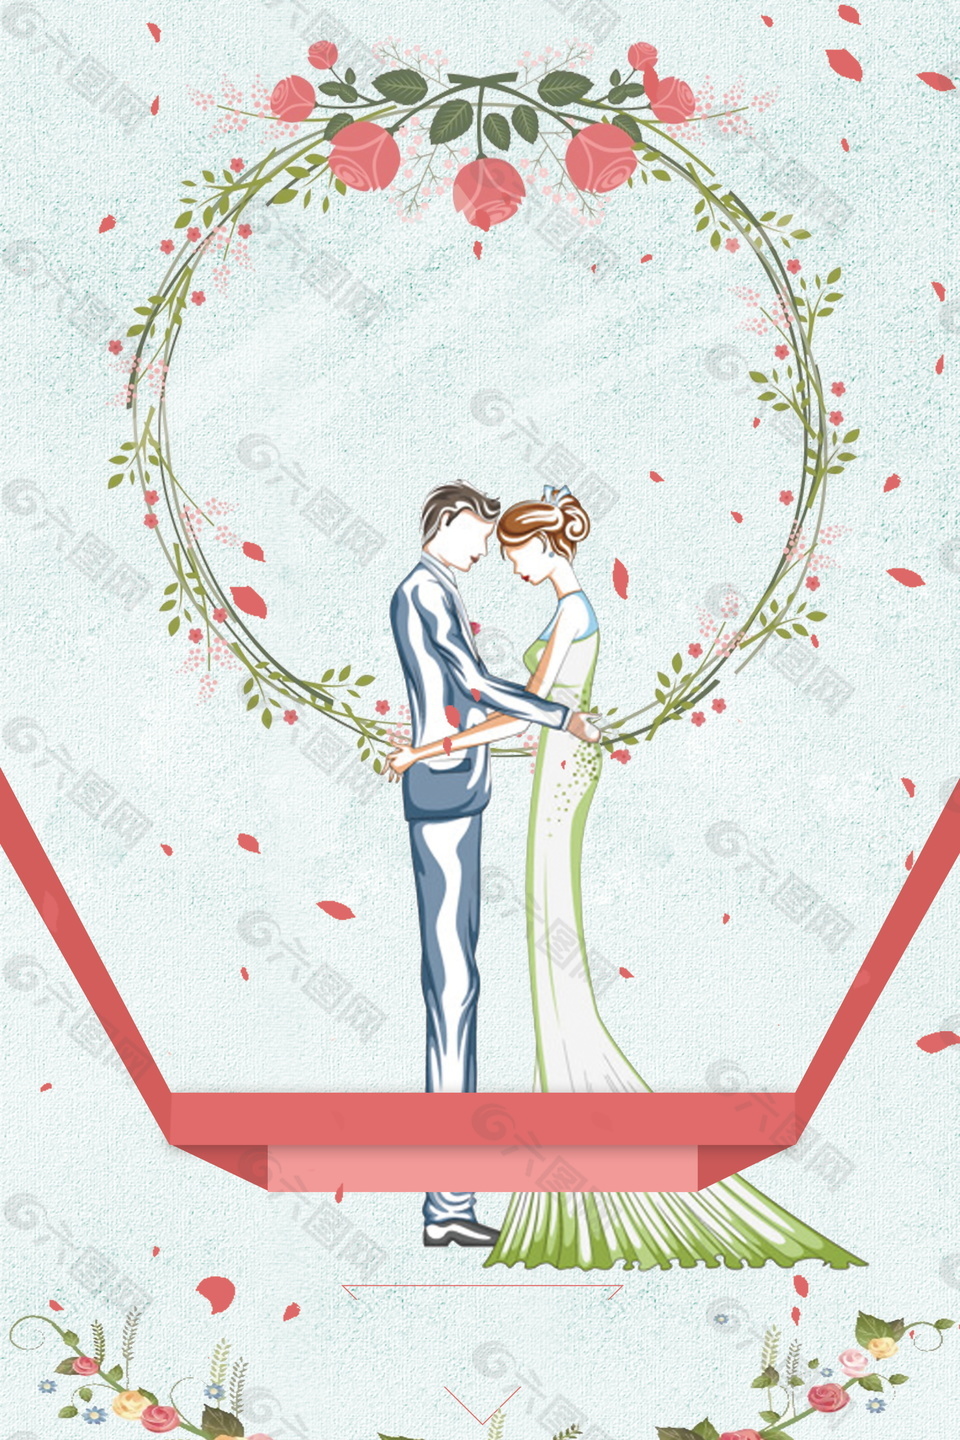 浪漫花瓣婚礼签到背景素材